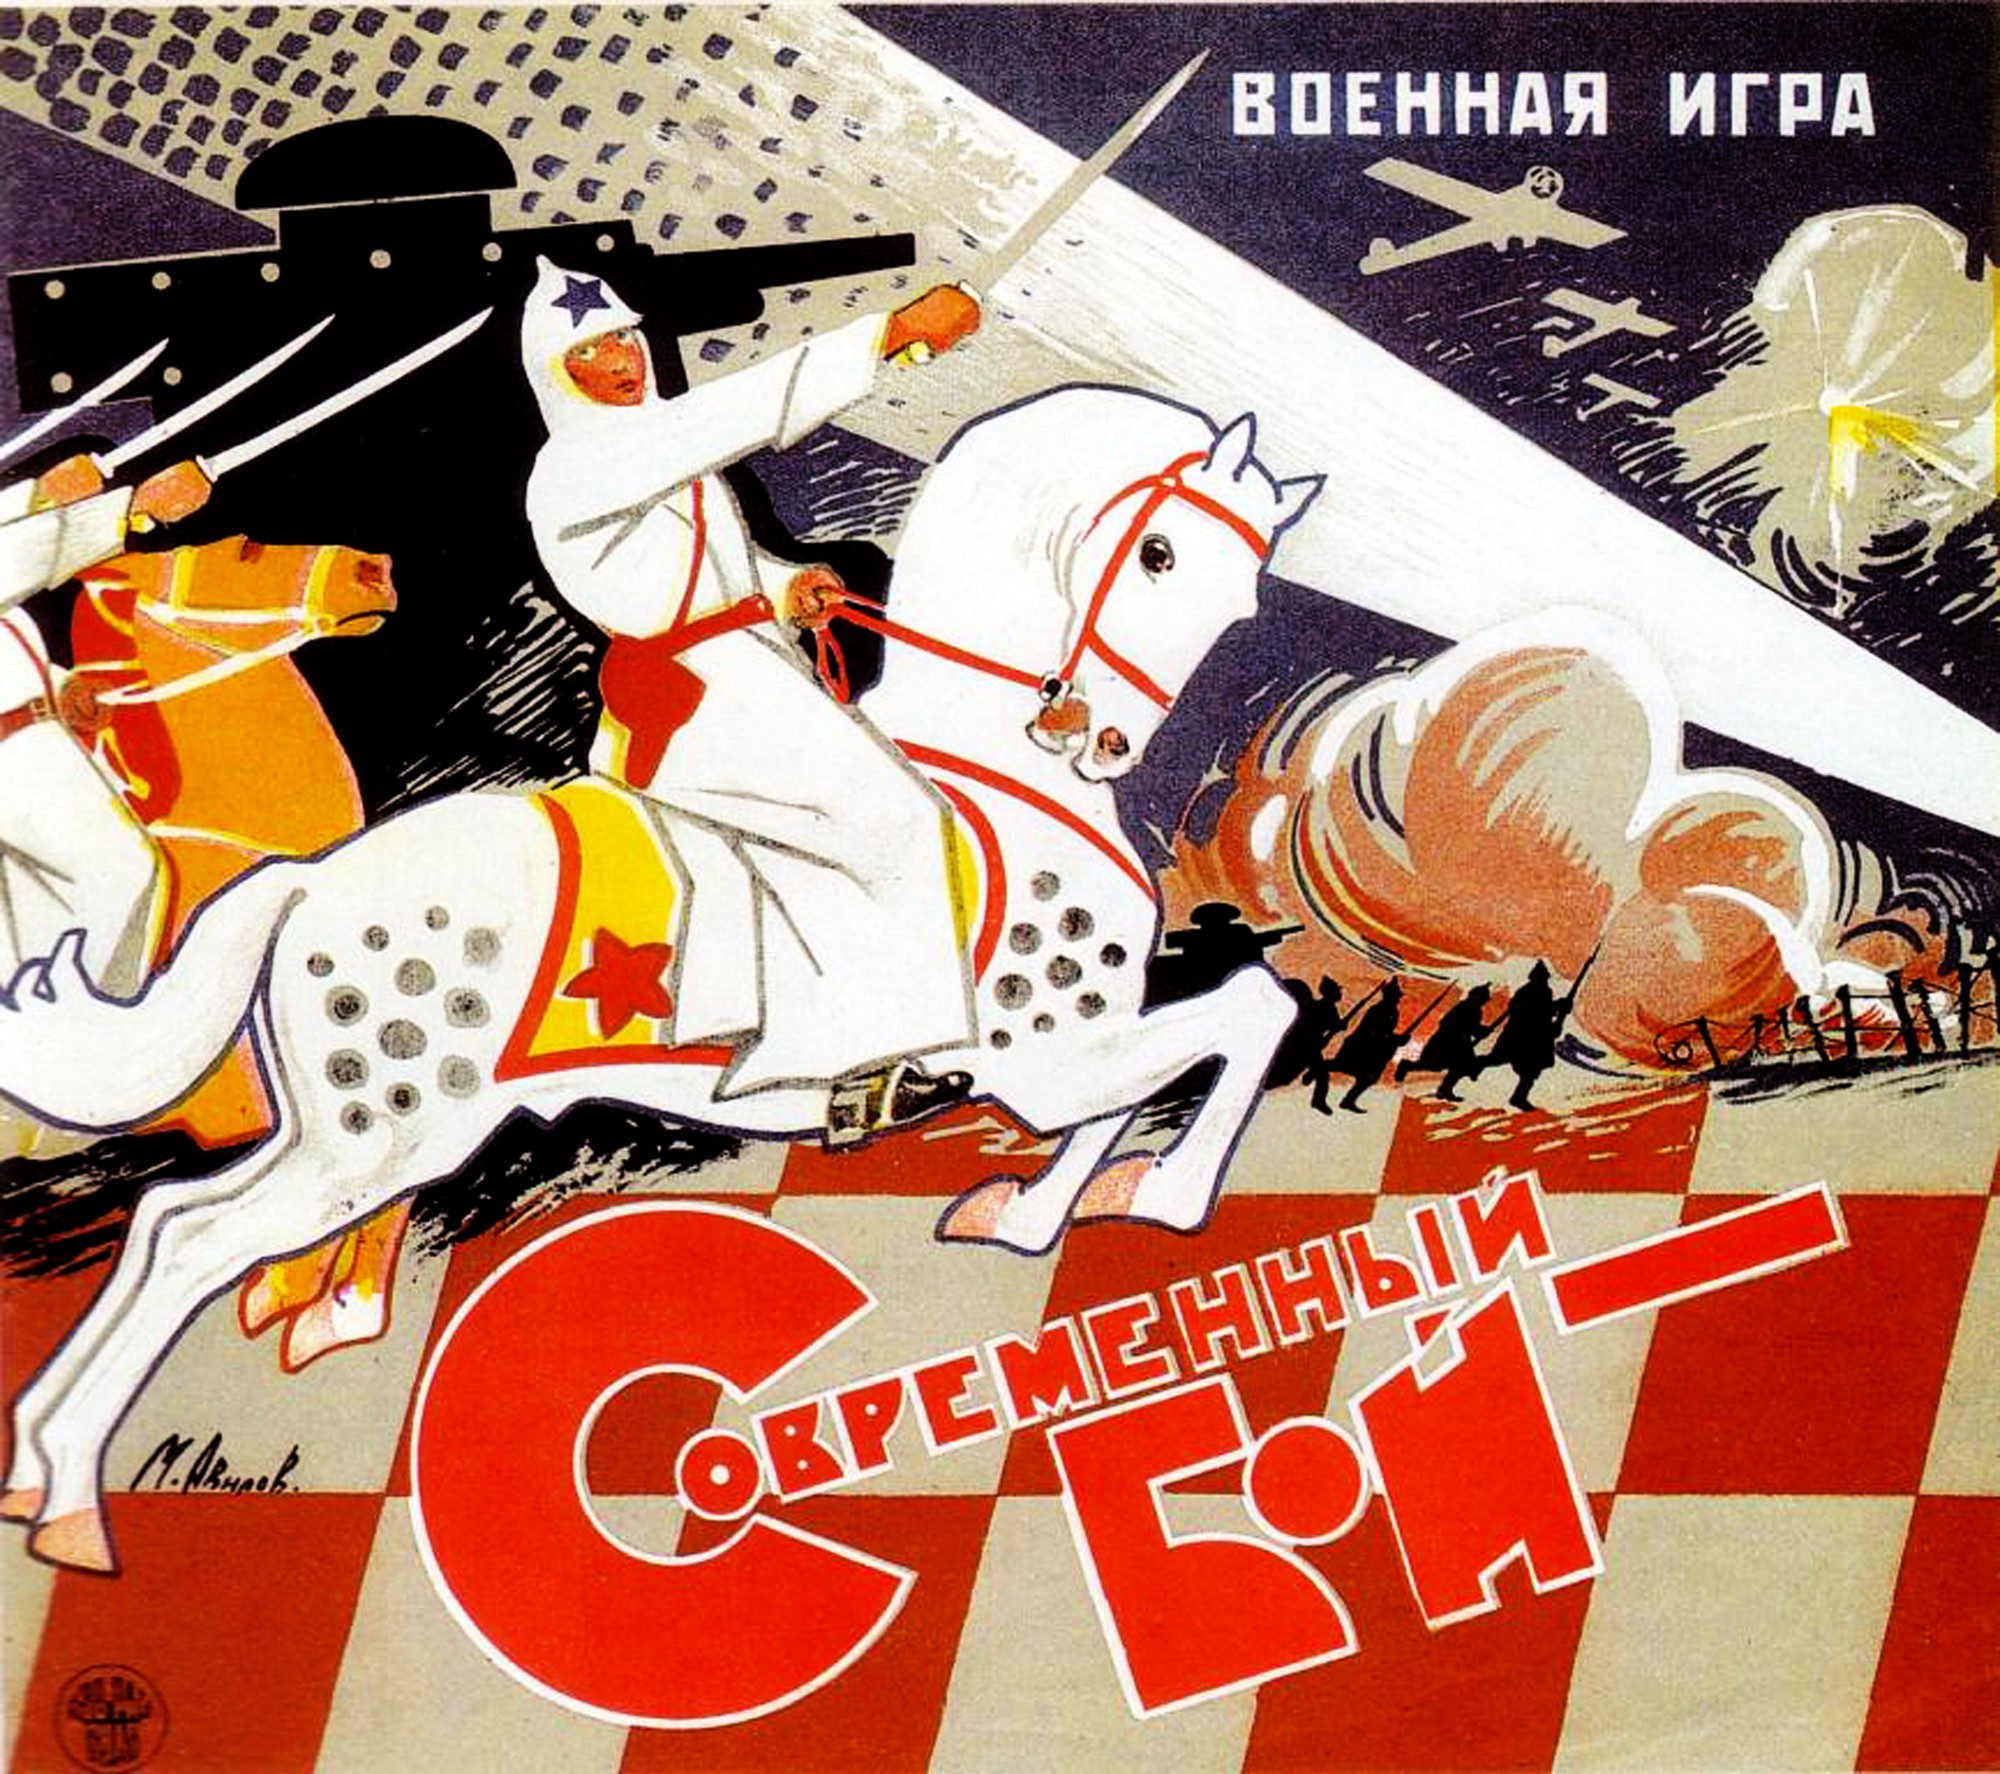 Рассмотри советские плакаты 20 30 годов. Плакаты 30-х годов. Советские настольные игры. Советские плакаты 20-х годов. Плакаты 20-х годов 20 века.